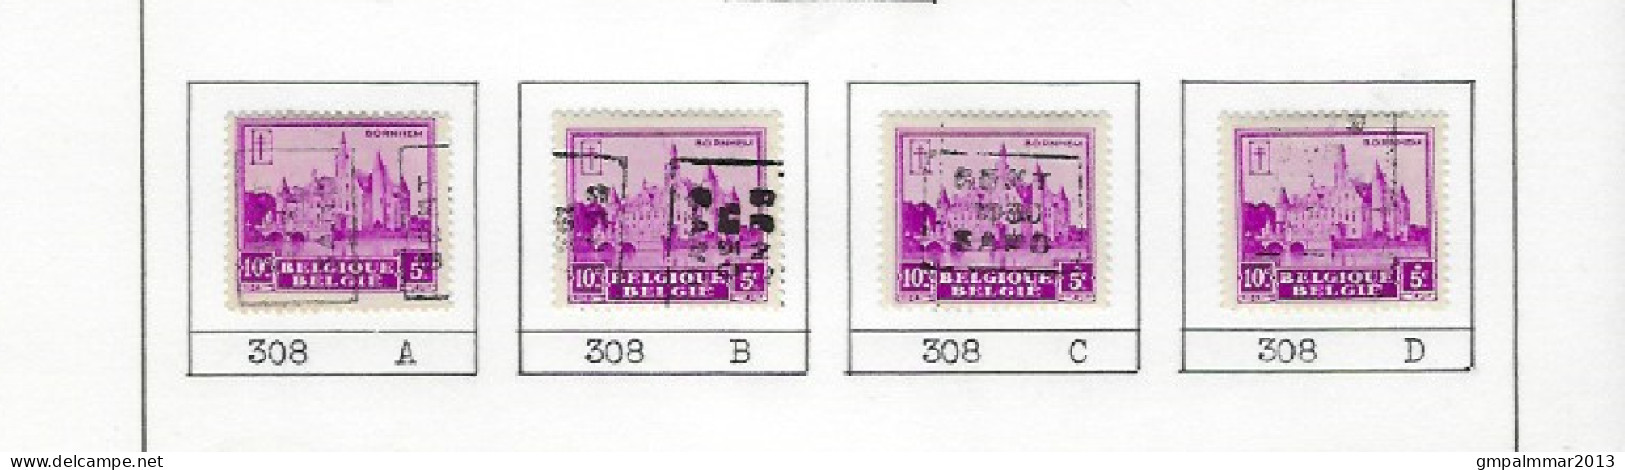 Zegel Nr. 308  voorafstempeling Nr. 5959 GENT 1930  GAND In De 4 Posities , A  B  C  en D ; Staat Zie Scan ! - Roulettes 1930-..